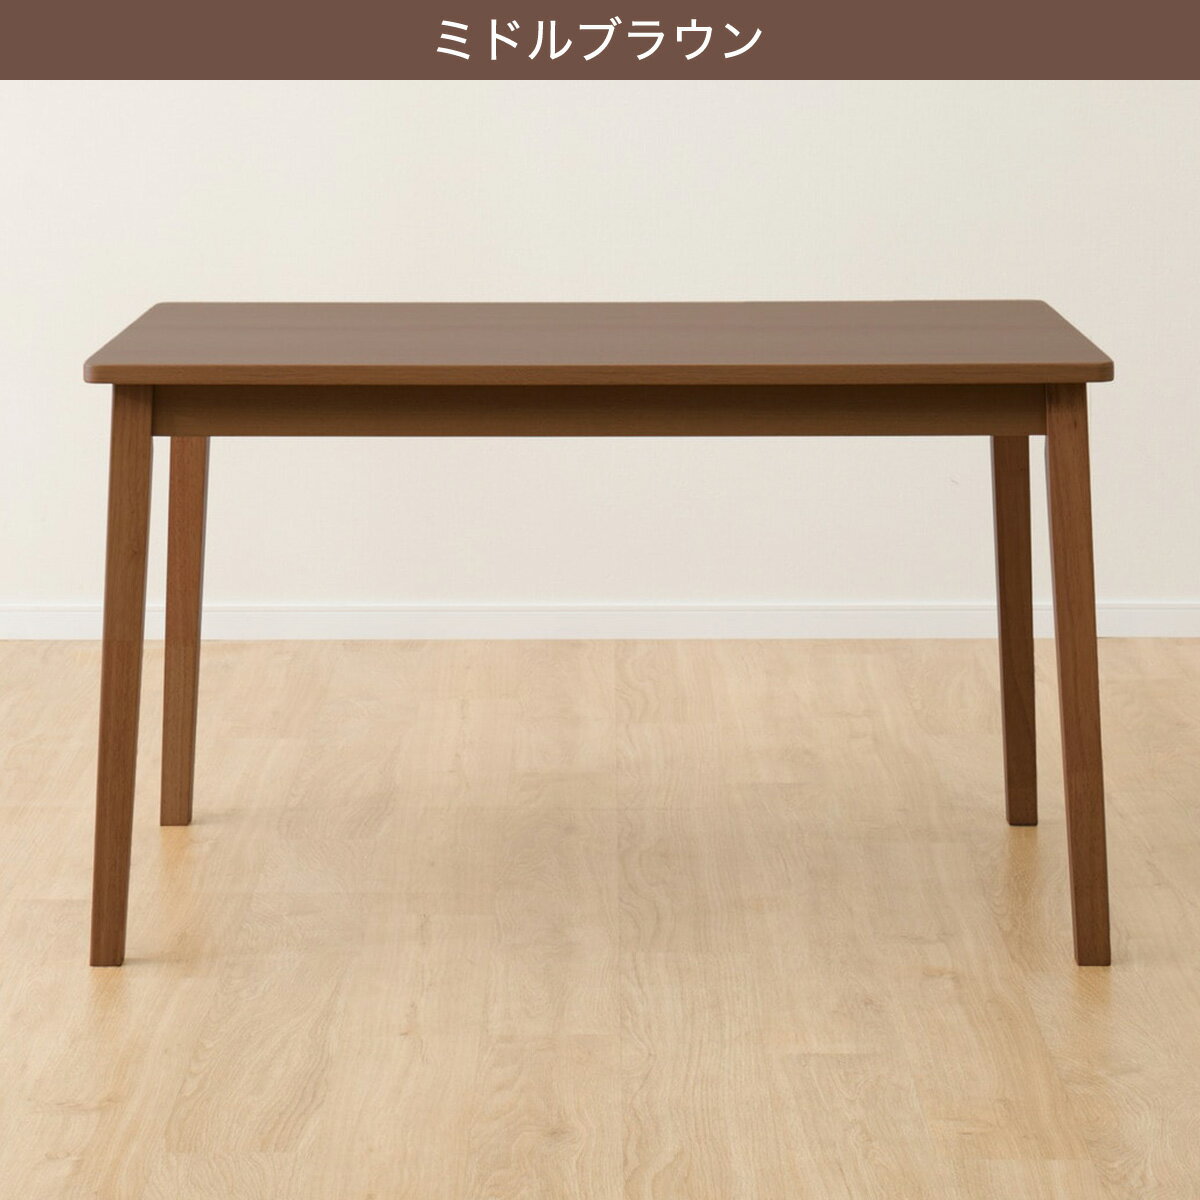 【北海道・東日本専用商品】[幅120cm] ダイニングテーブル(4LEG SI01 G 120)   【5年保証】